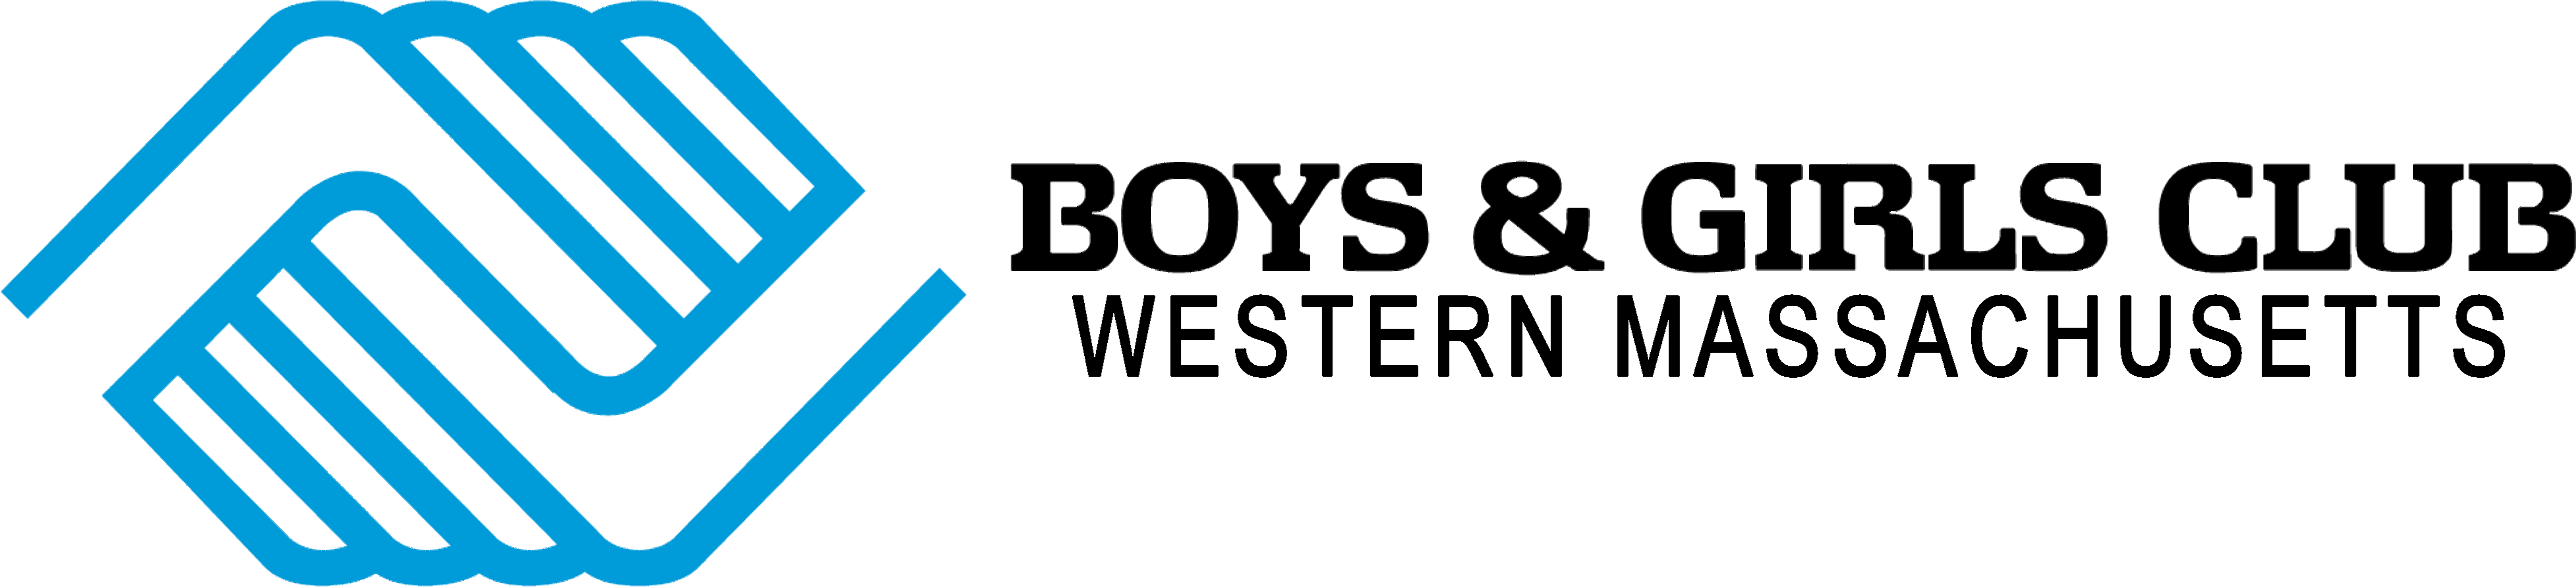 Boys & girls Clubs western mass